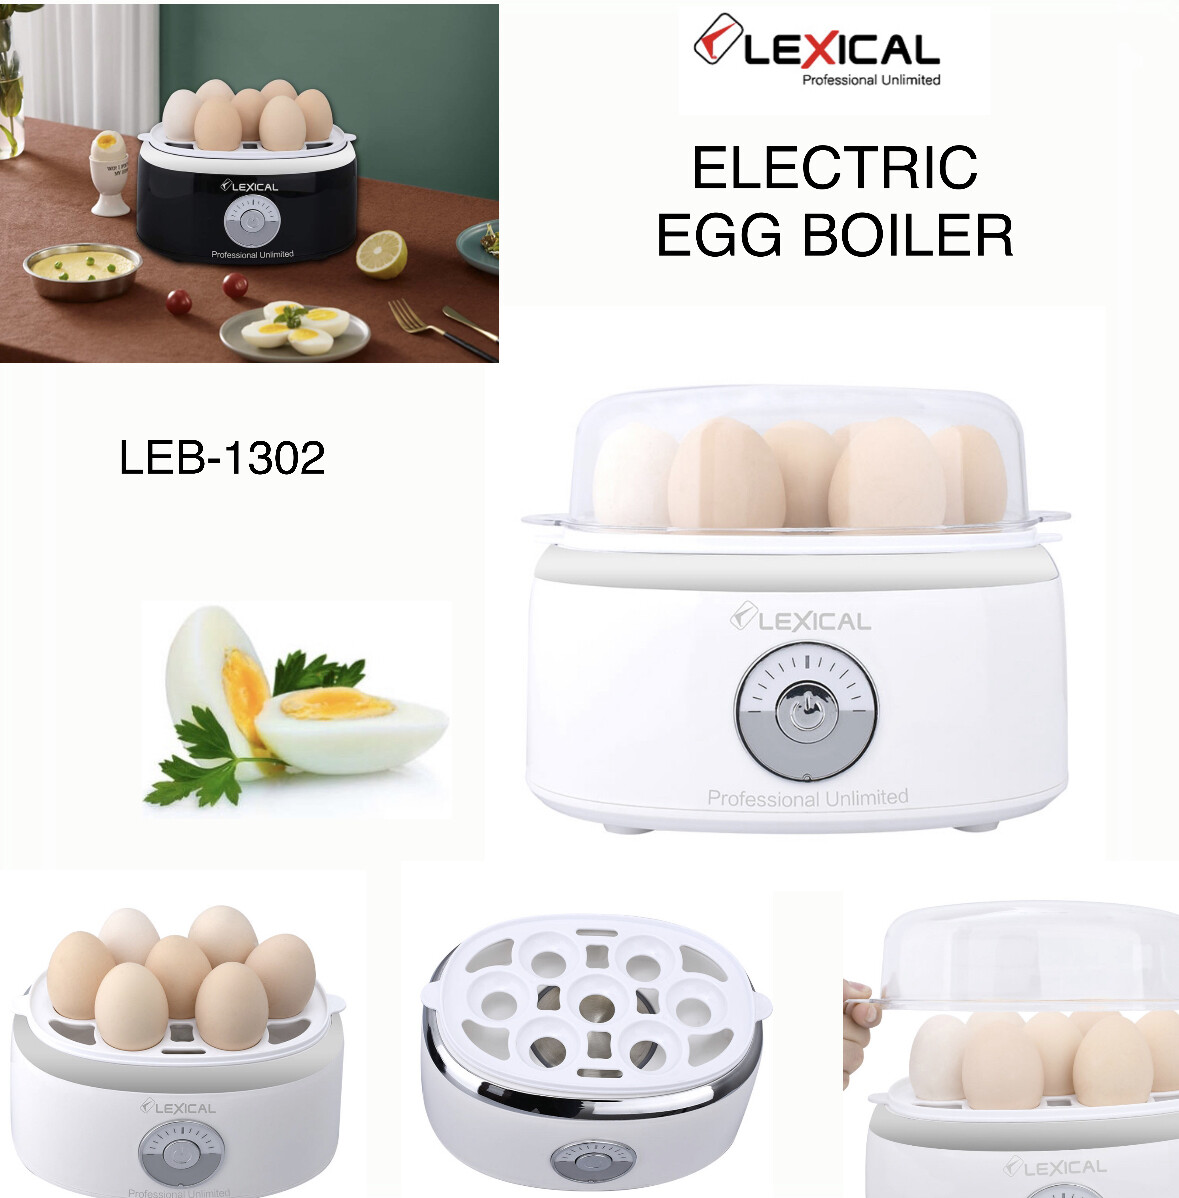 LEXICAL Egg Boiler